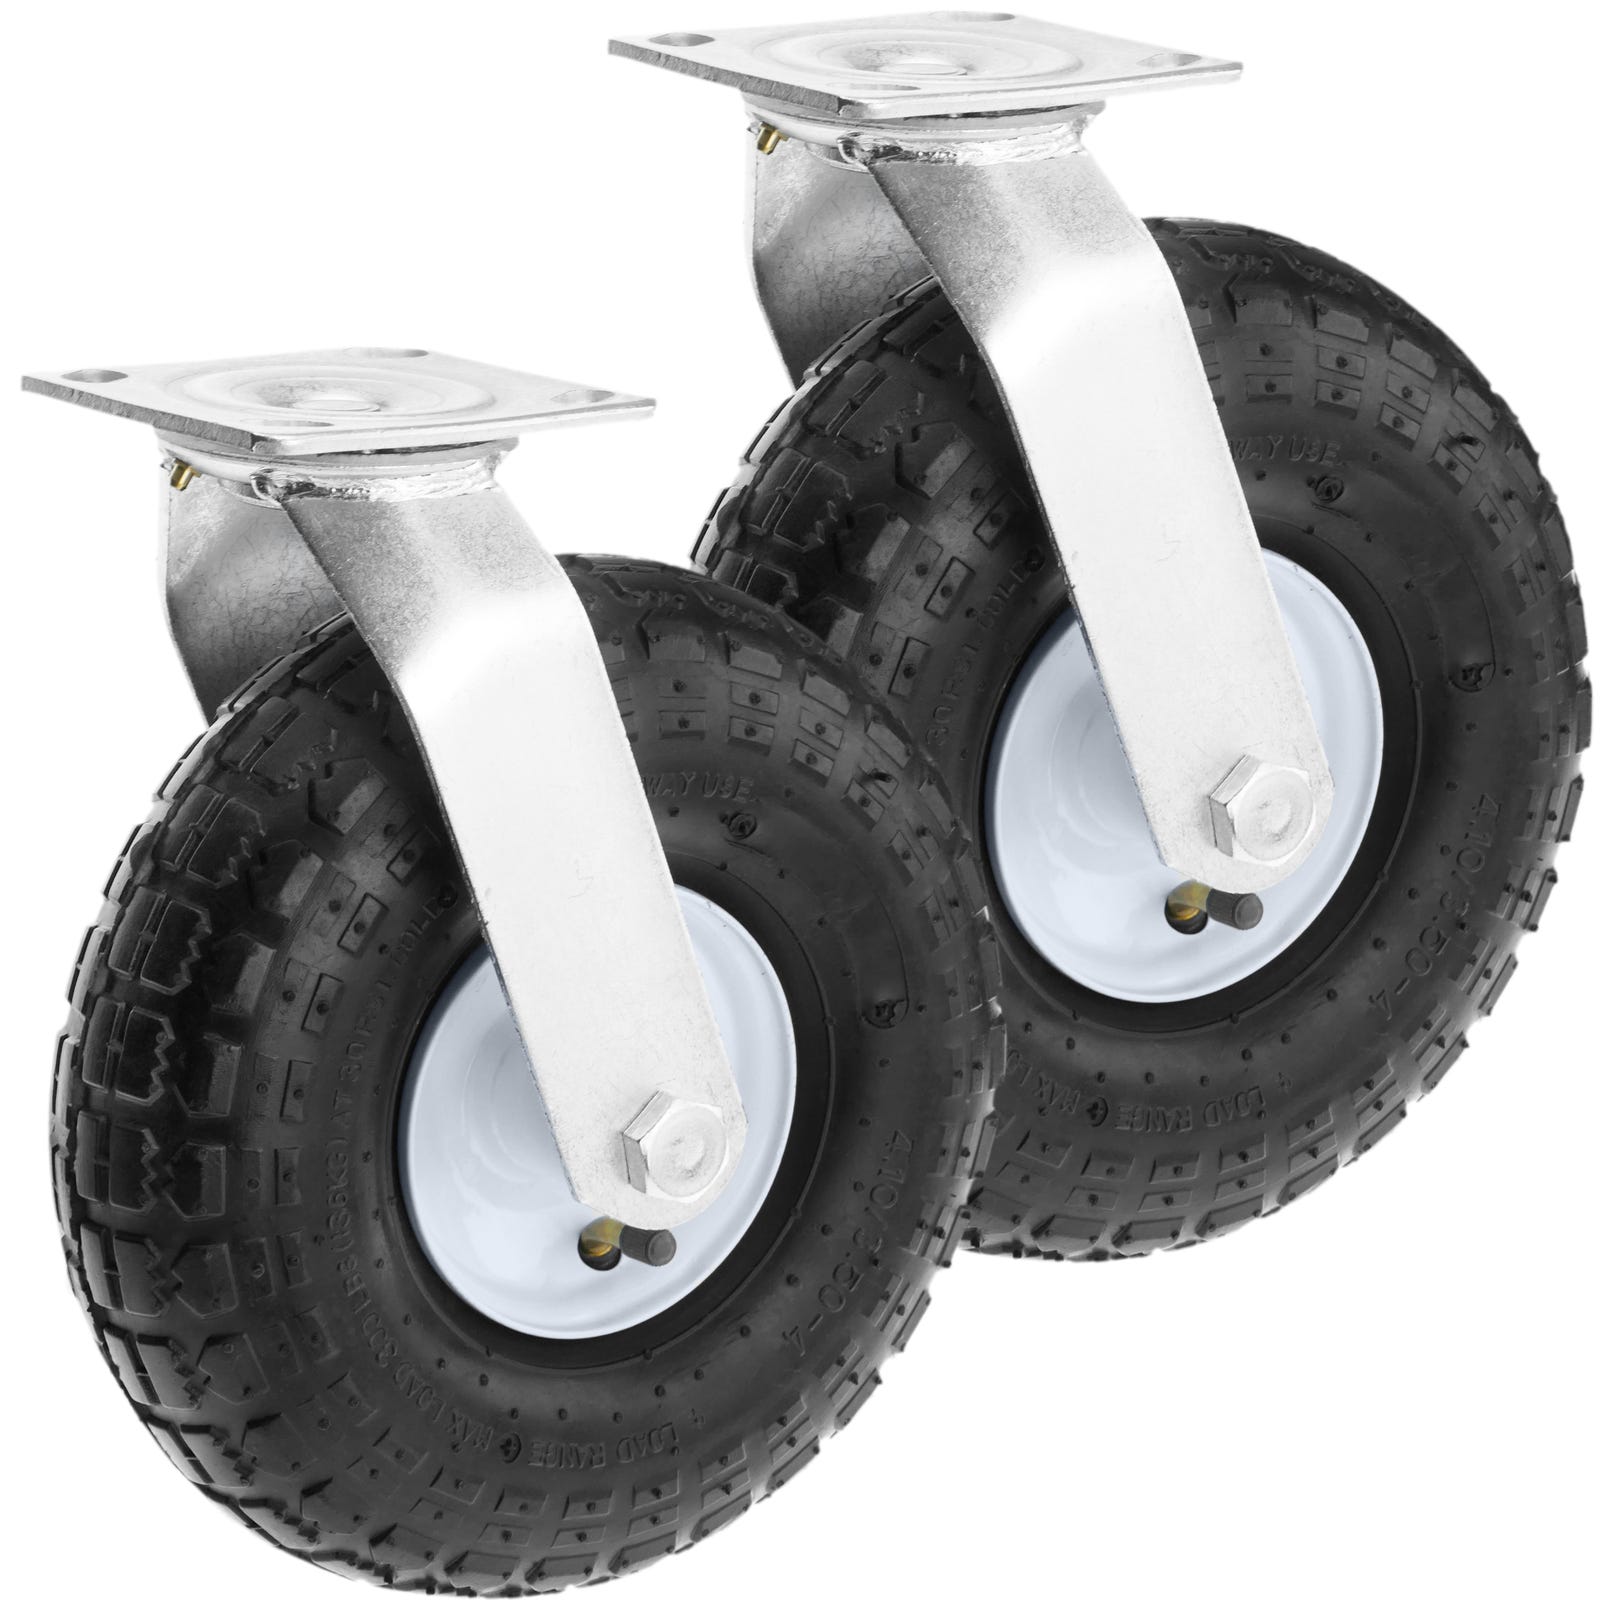 Dessin losangique 3.50-8 pneumatique avec essieu de roue en caoutchouc pour  une brouette - Chine Mousse de PU Roue, roue libre à plat